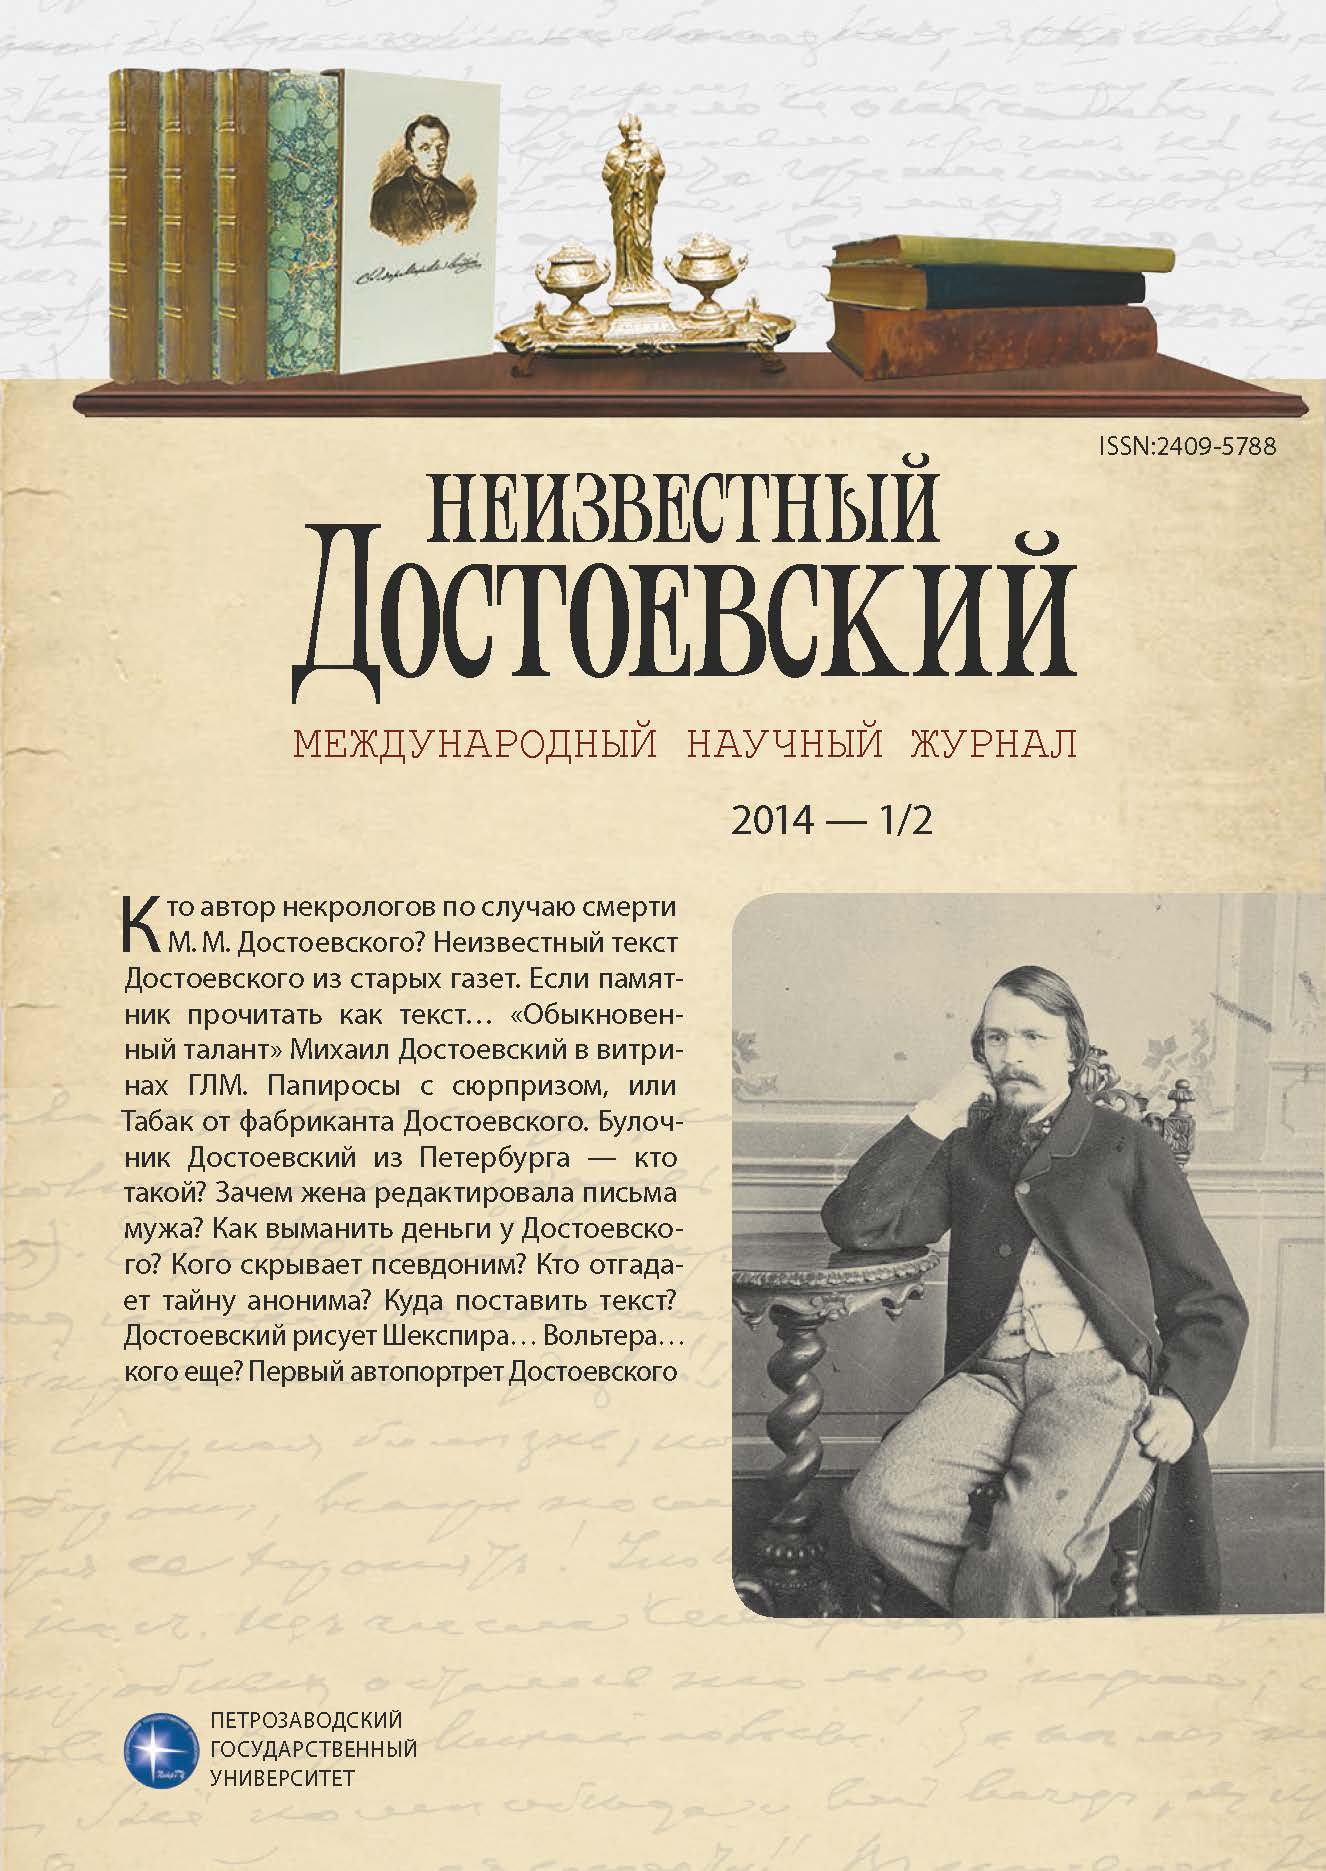 Портретные зарисовки Достоевского: из новых атрибуций